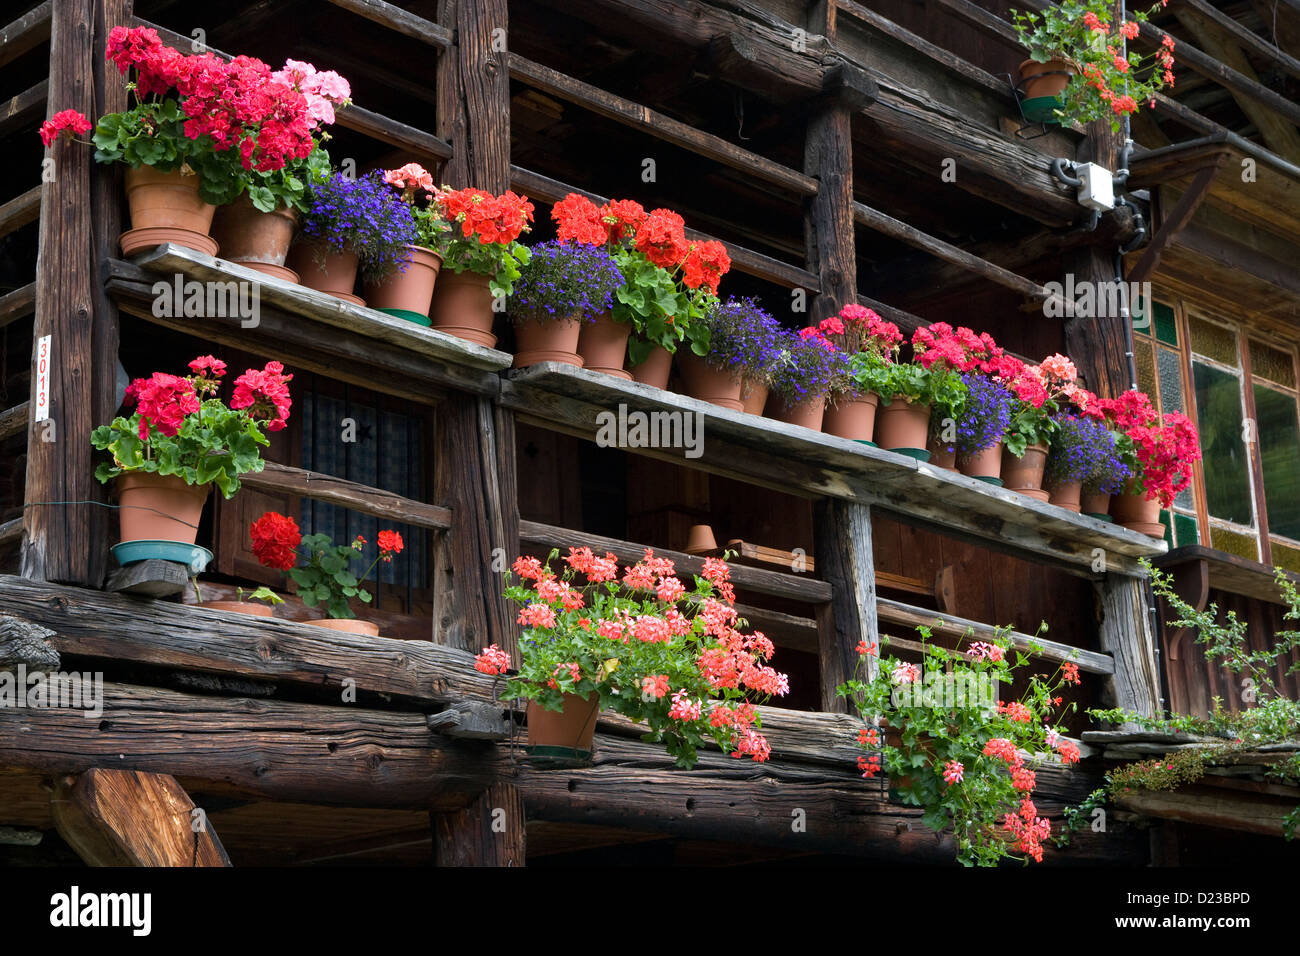 Piemonte: Pedemonte - Walser house detail - geraniums in pots Stock Photo